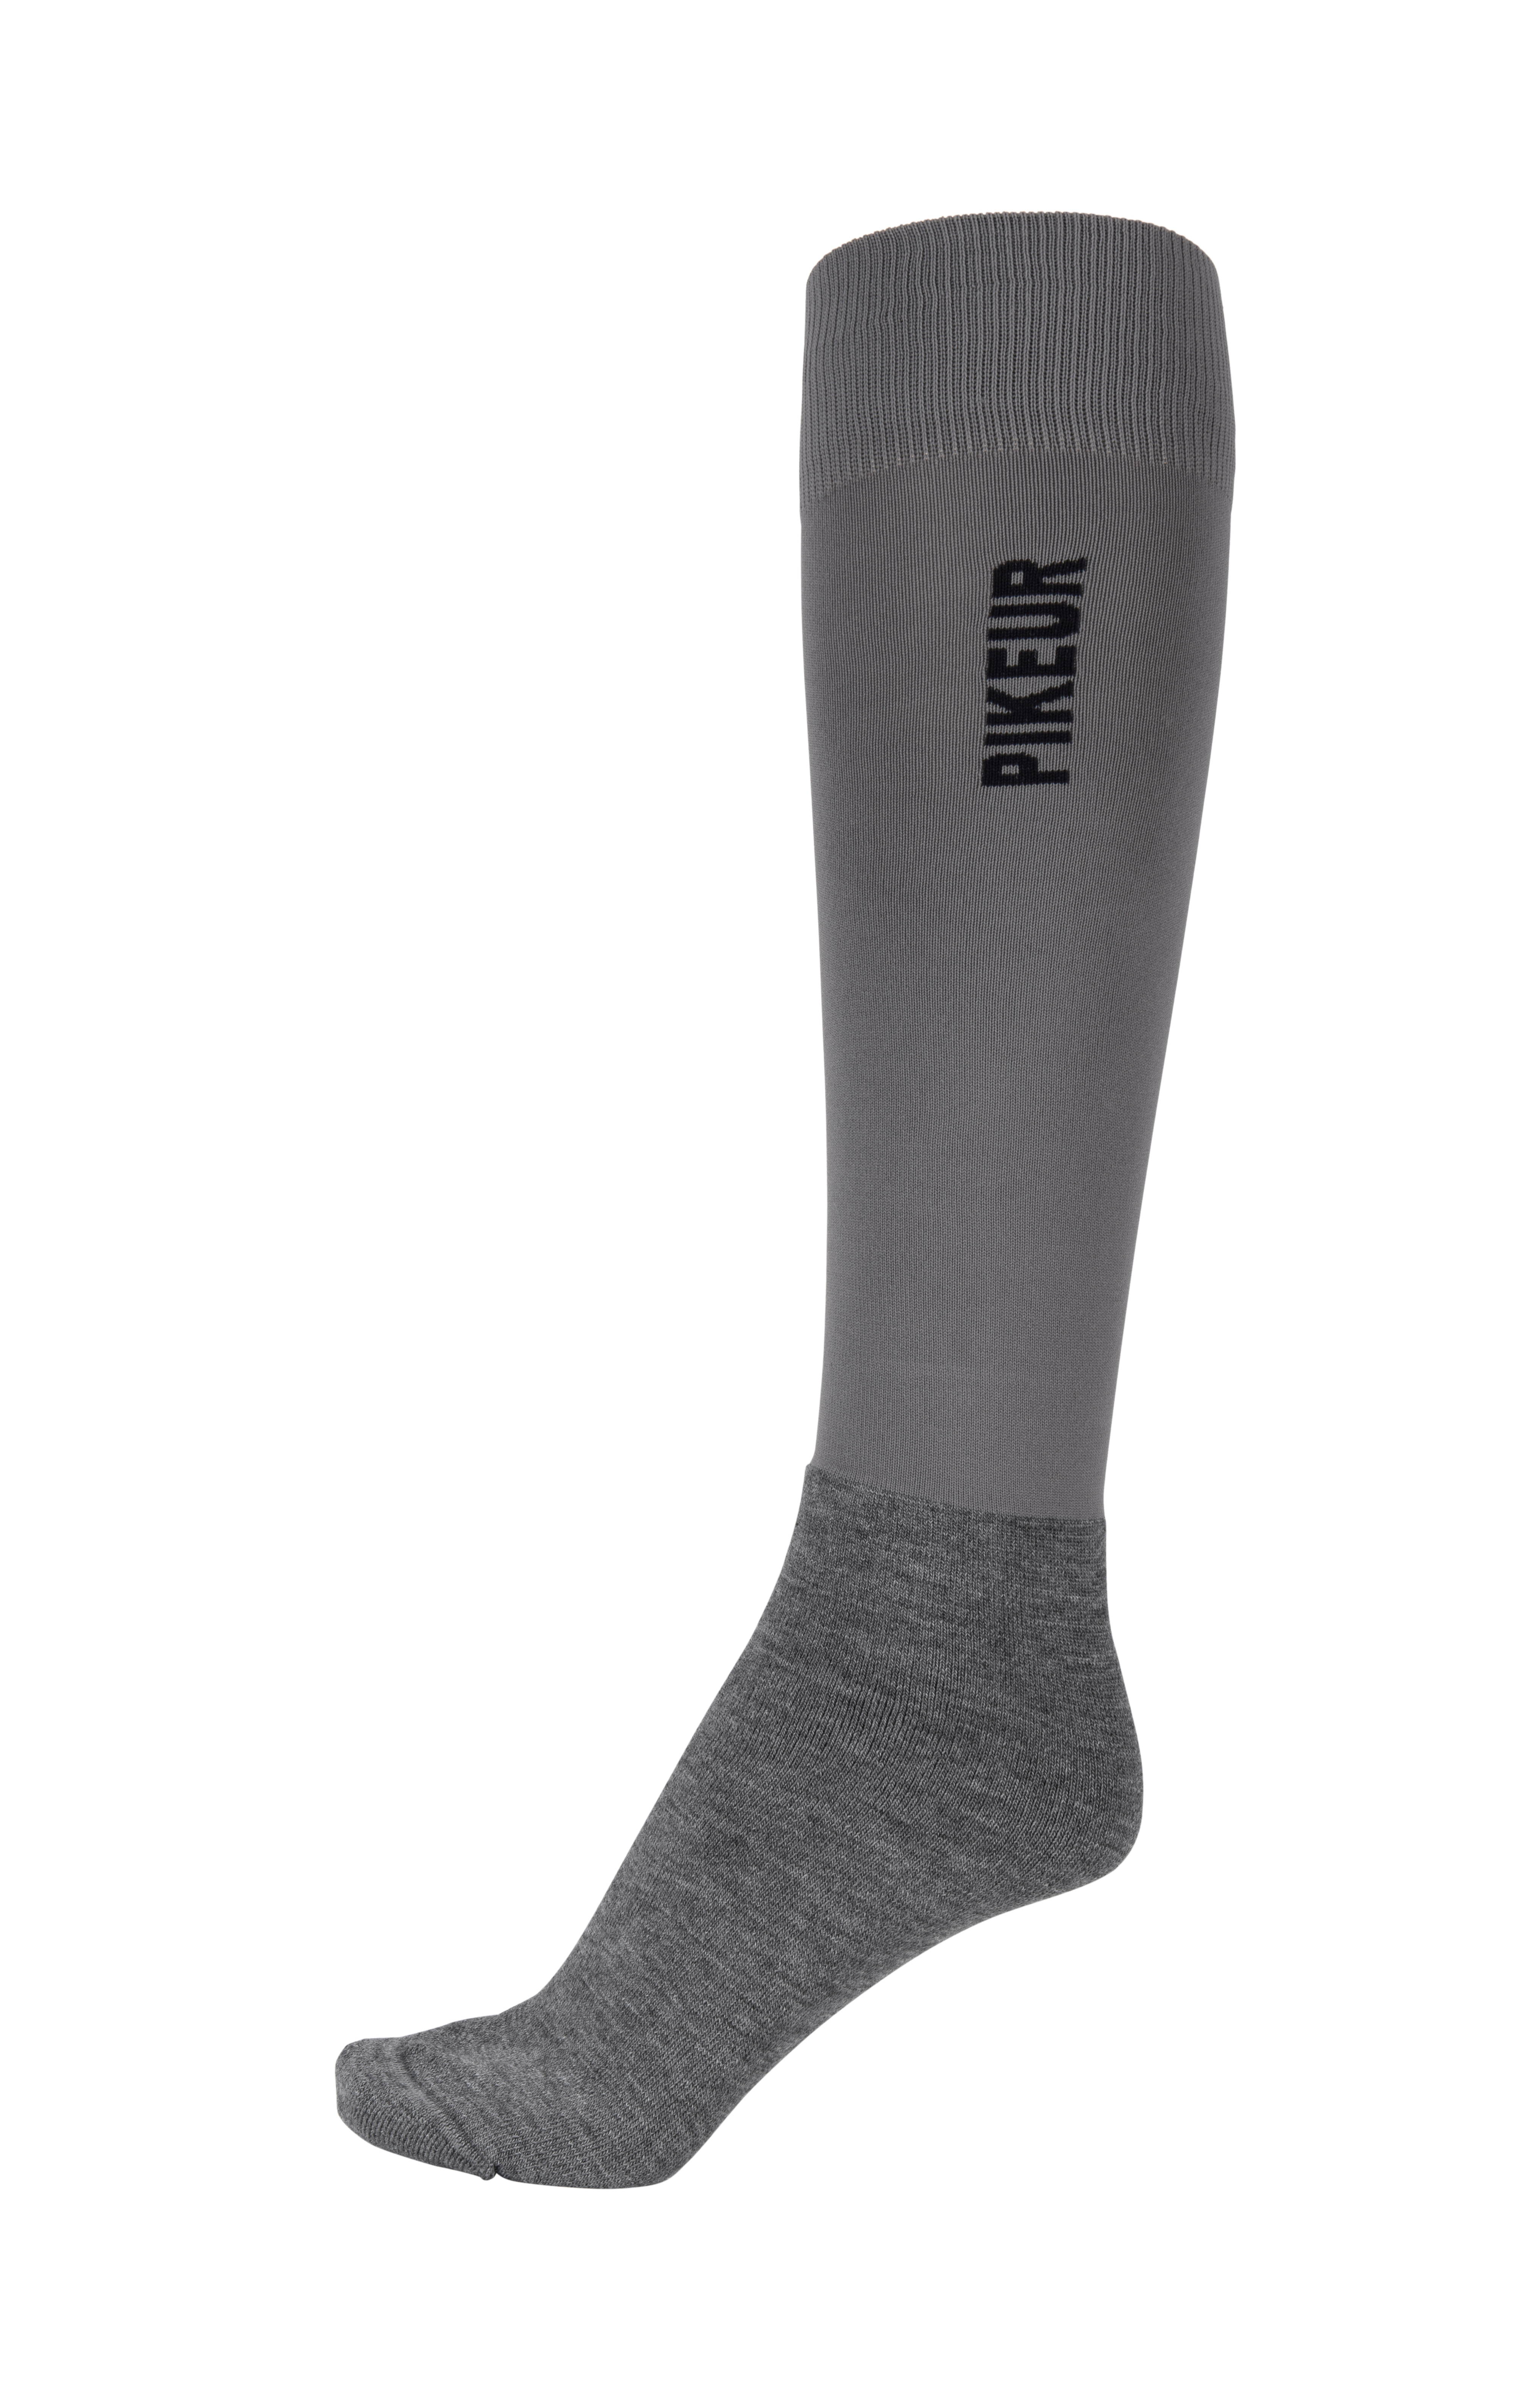 Calcetines de equitación KNIE-STRUMPF Tubo, gris oscuro/gris claro